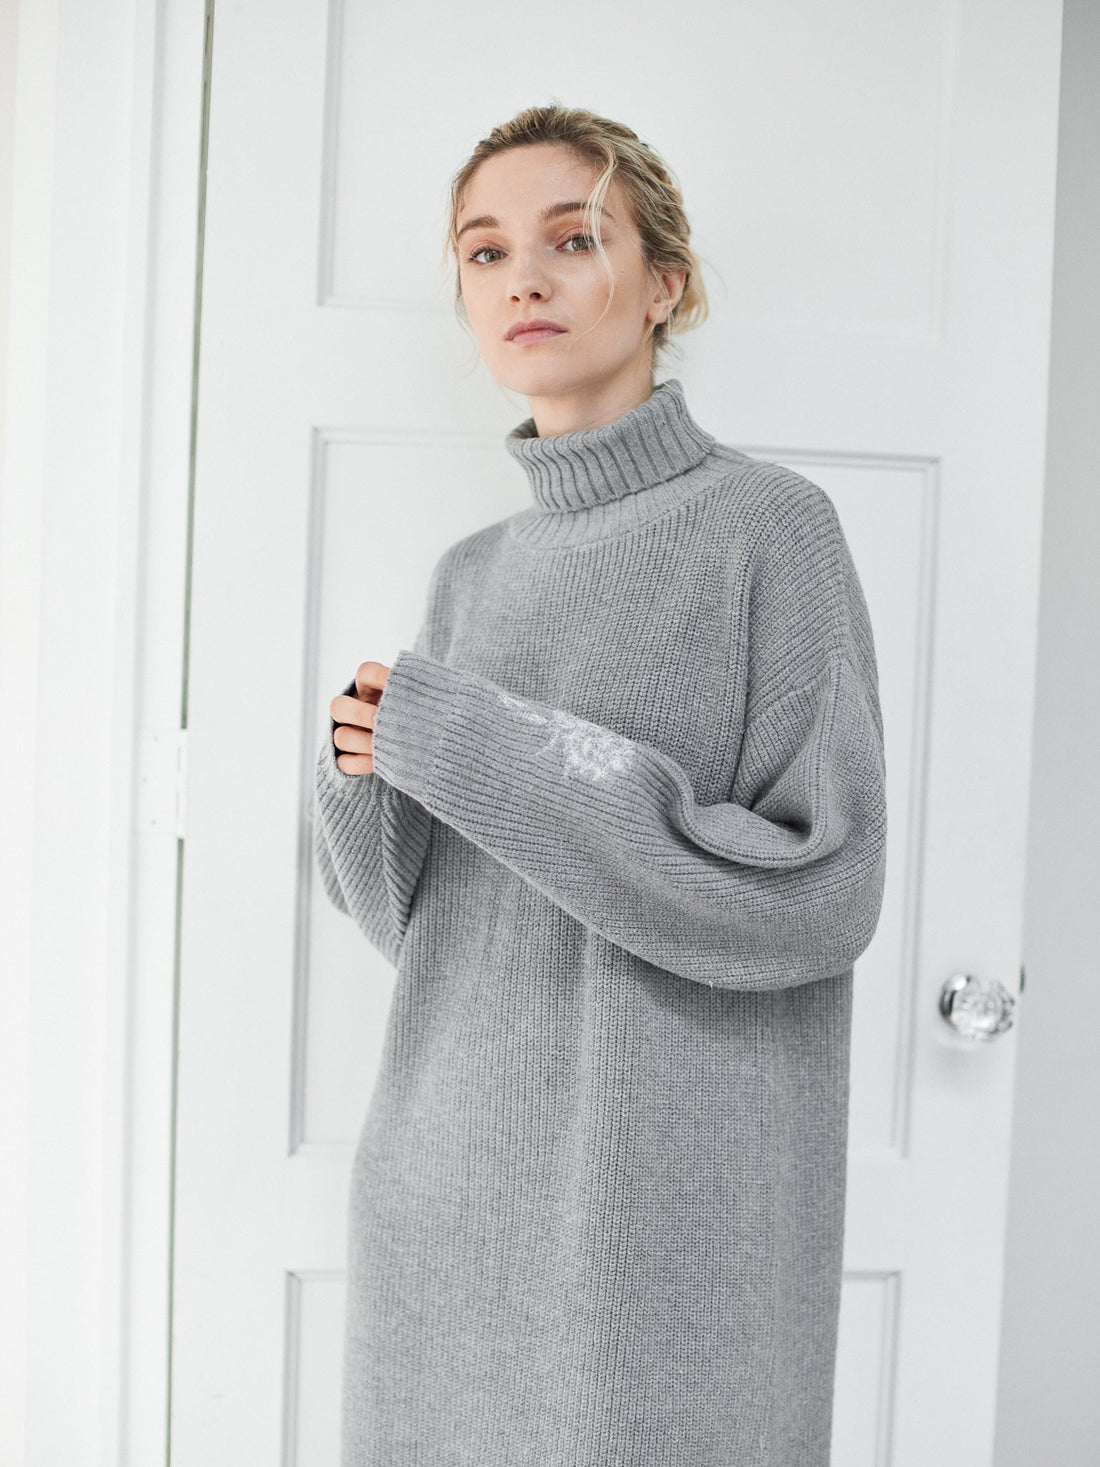 elegant knitted dress